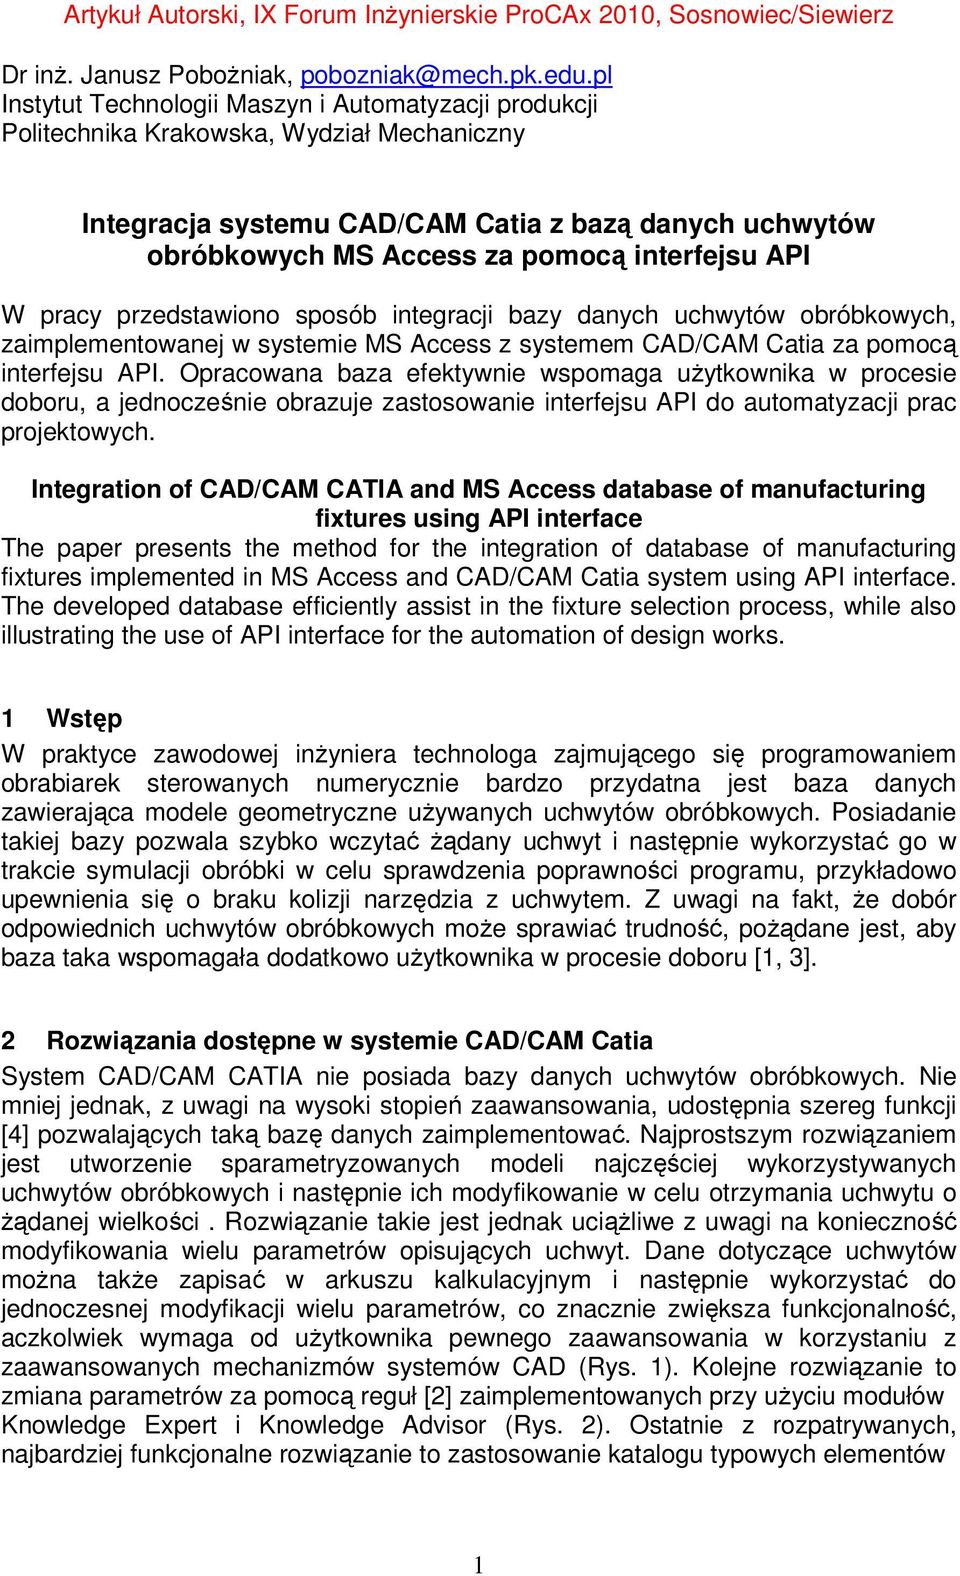 API W pracy przedstawiono sposób integracji bazy danych uchwytów obróbkowych, zaimplementowanej w systemie MS Access z systemem CAD/CAM Catia za pomocą interfejsu API.